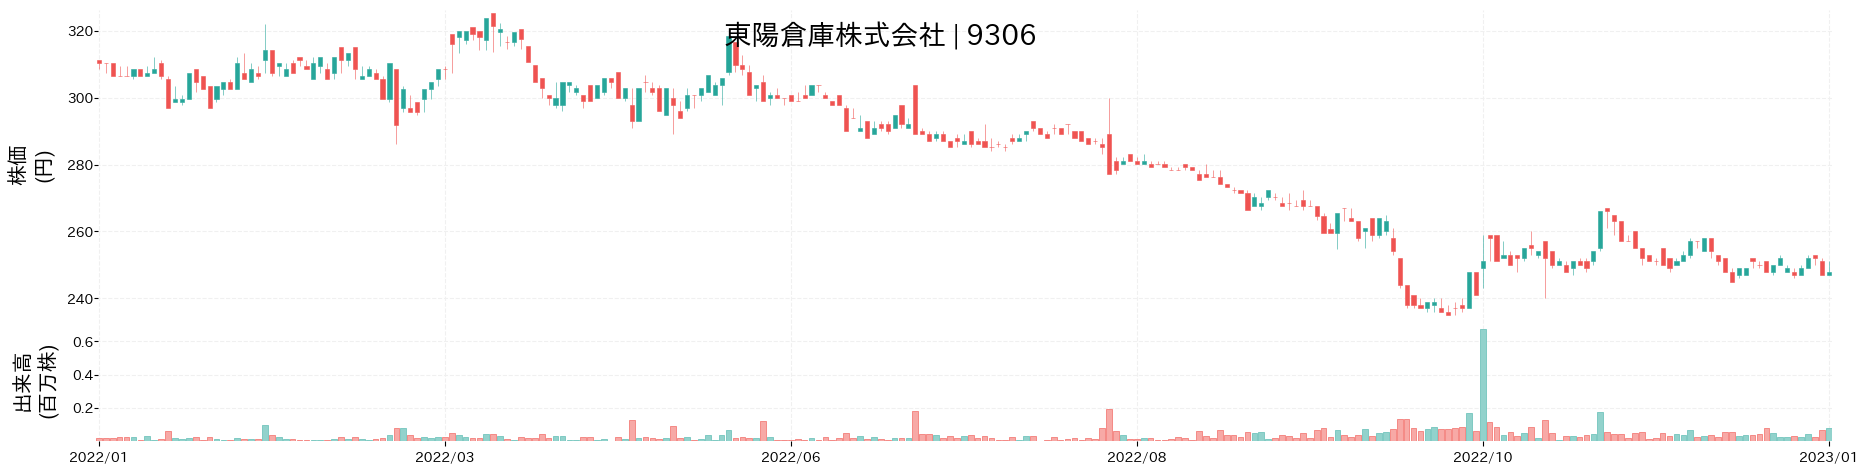 東陽倉庫の株価推移(2022)